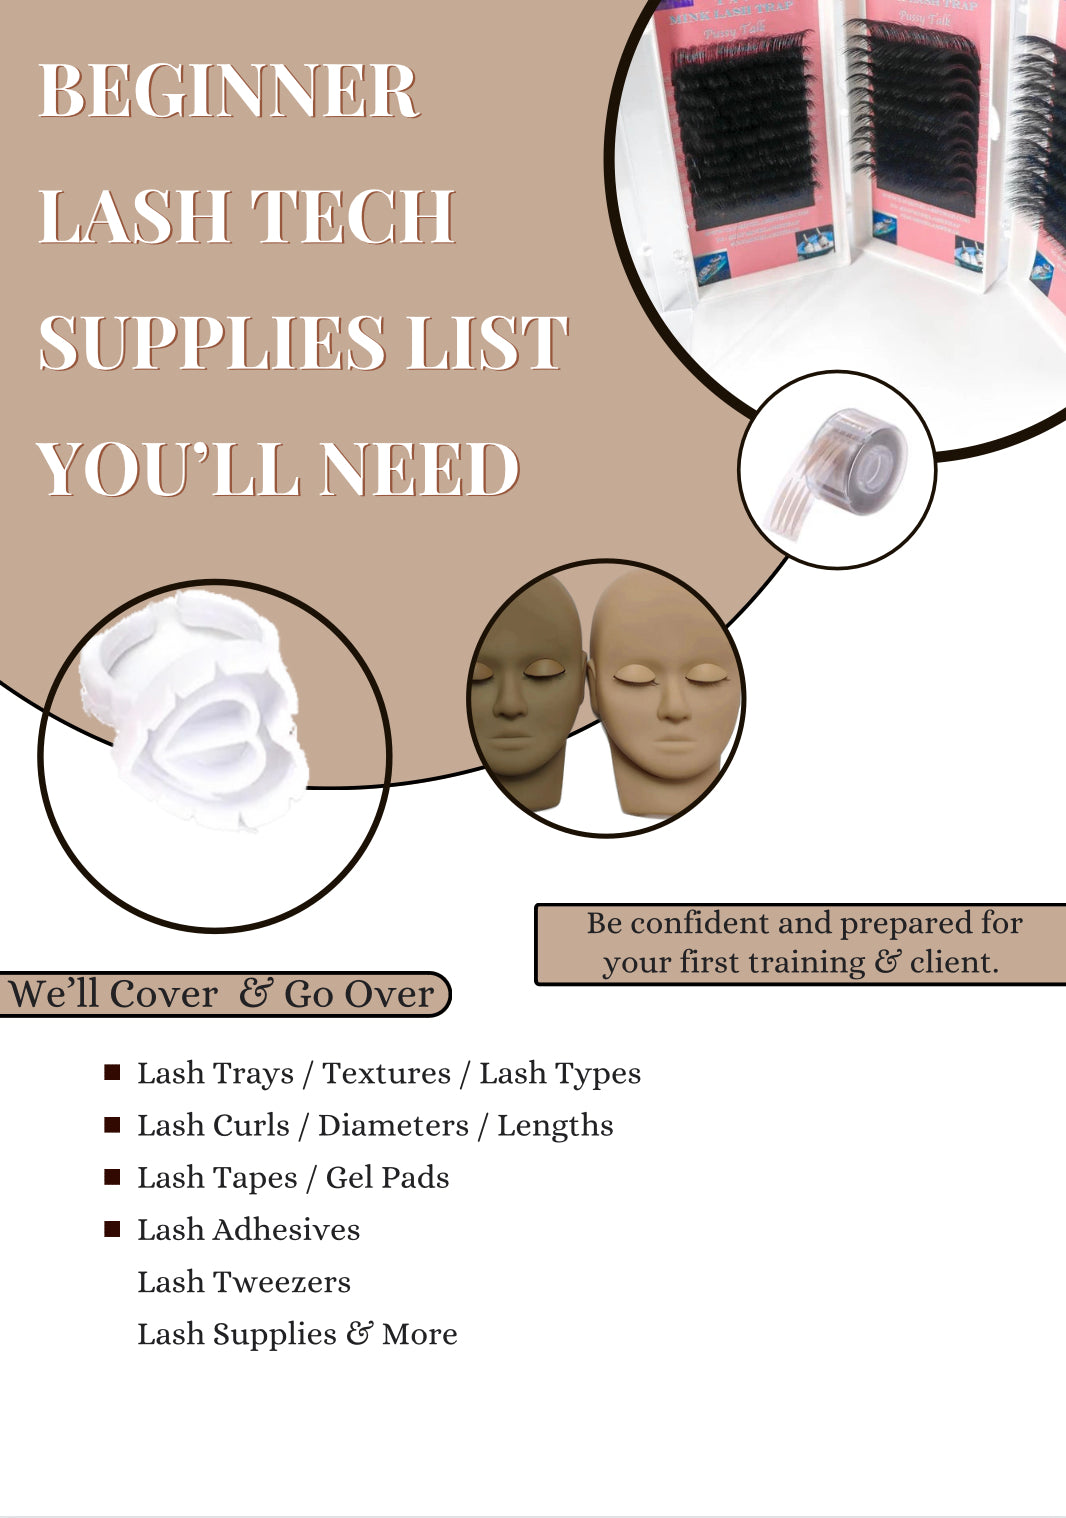 Beginner Lash Tech Supplies List You’ll Need